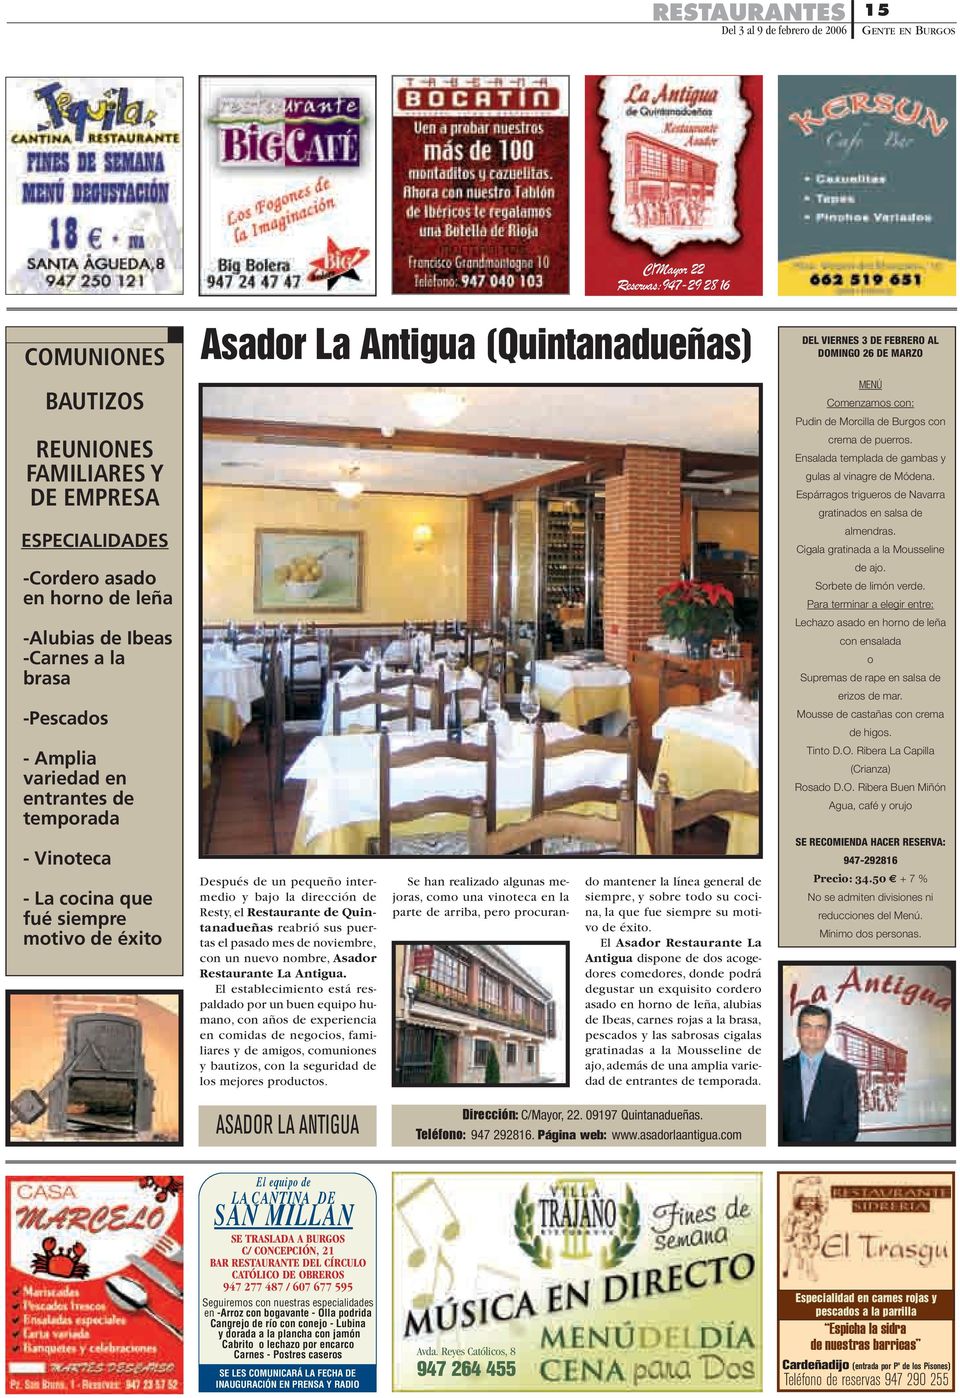 Quintanadueñas reabrió sus puertas el pasado mes de noviembre, con un nuevo nombre, Asador Restaurante La Antigua.